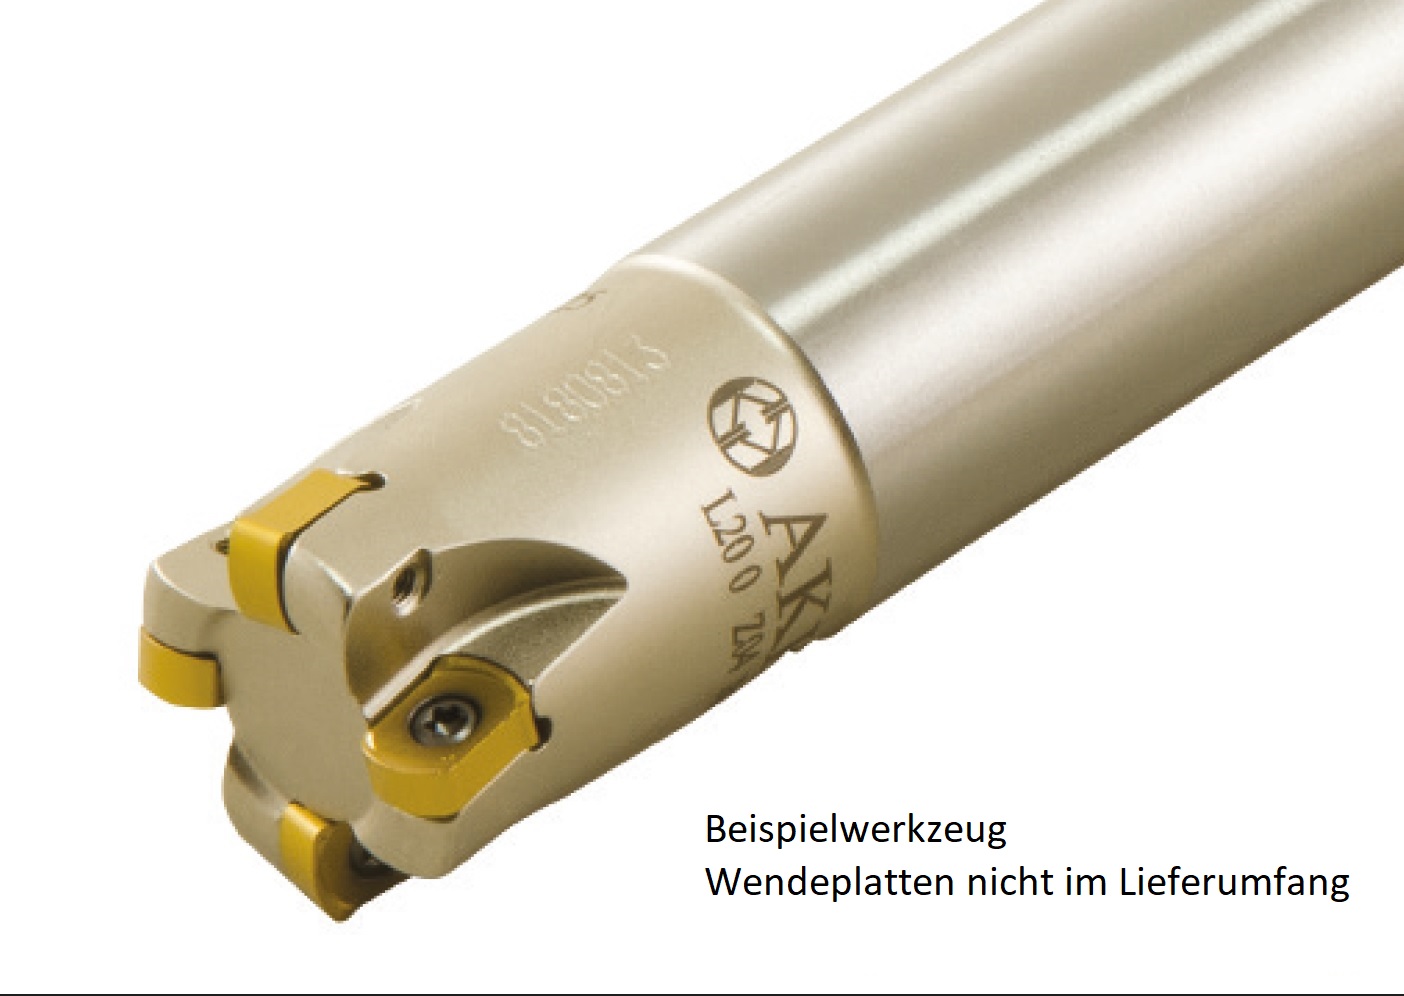 AKKO-Wendeplatten-Schaftfräser ø 26 mm, 90°, kompatibel mit Taegutec BLMP 0603....
Schaft-ø 25, ohne Innenkühlung, Z=4